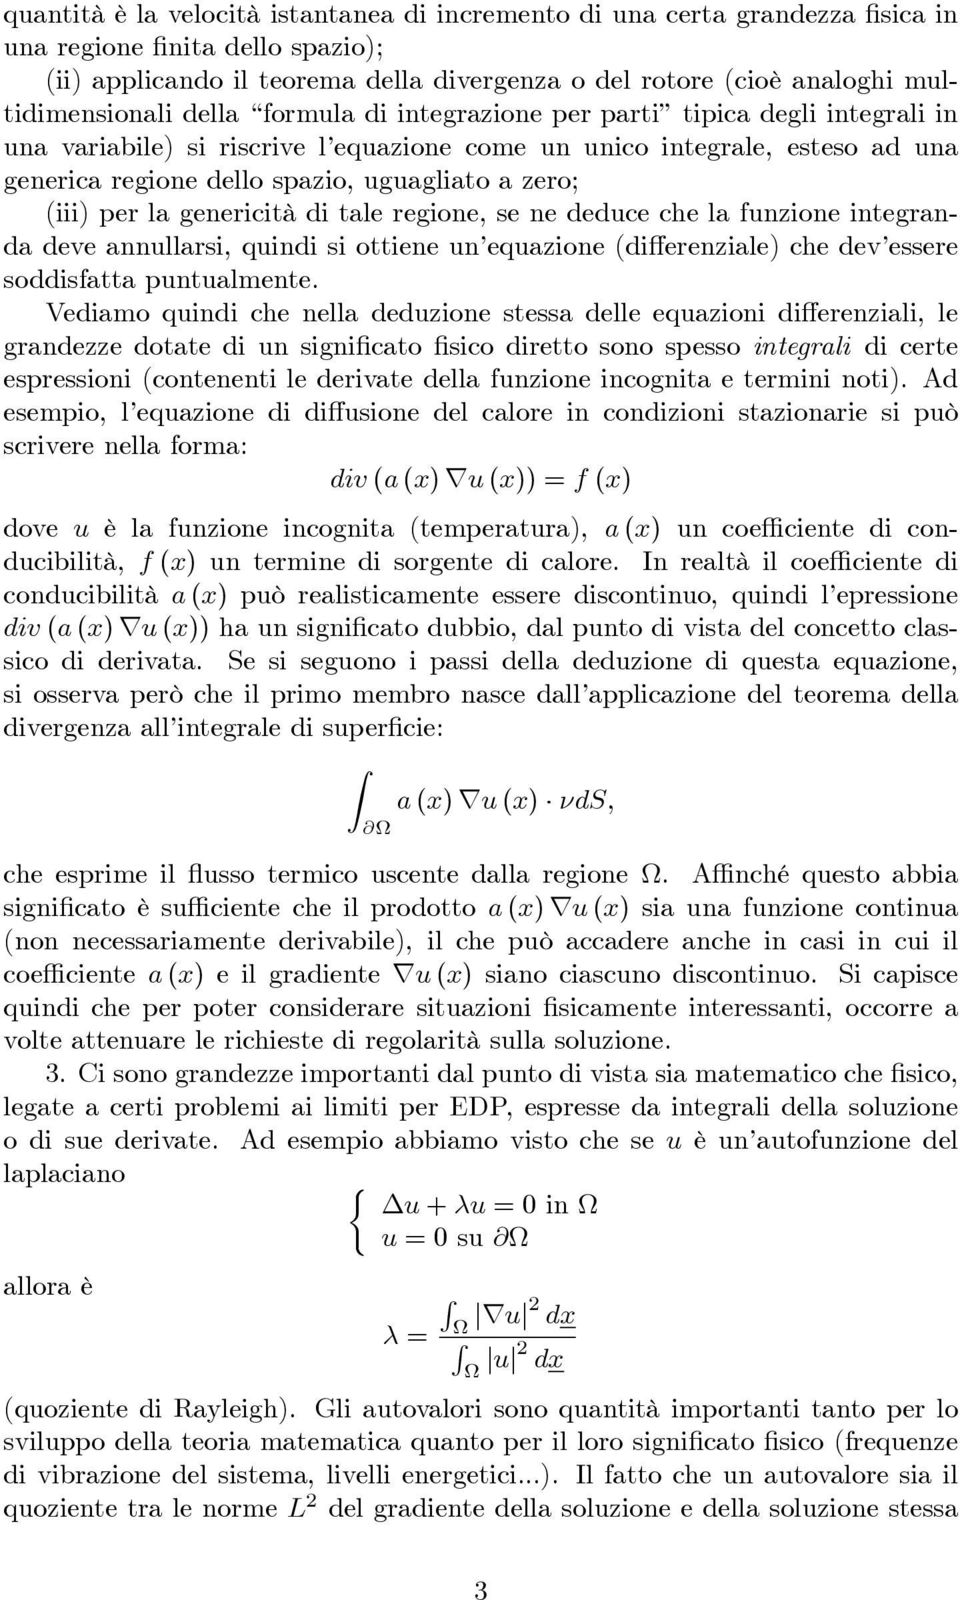 uguagliato a zero; (iii) per la genericità di tale regione, se ne deduce che la funzione integranda deve annullarsi, quindi si ottiene un equazione (di erenziale) che dev essere soddisfatta